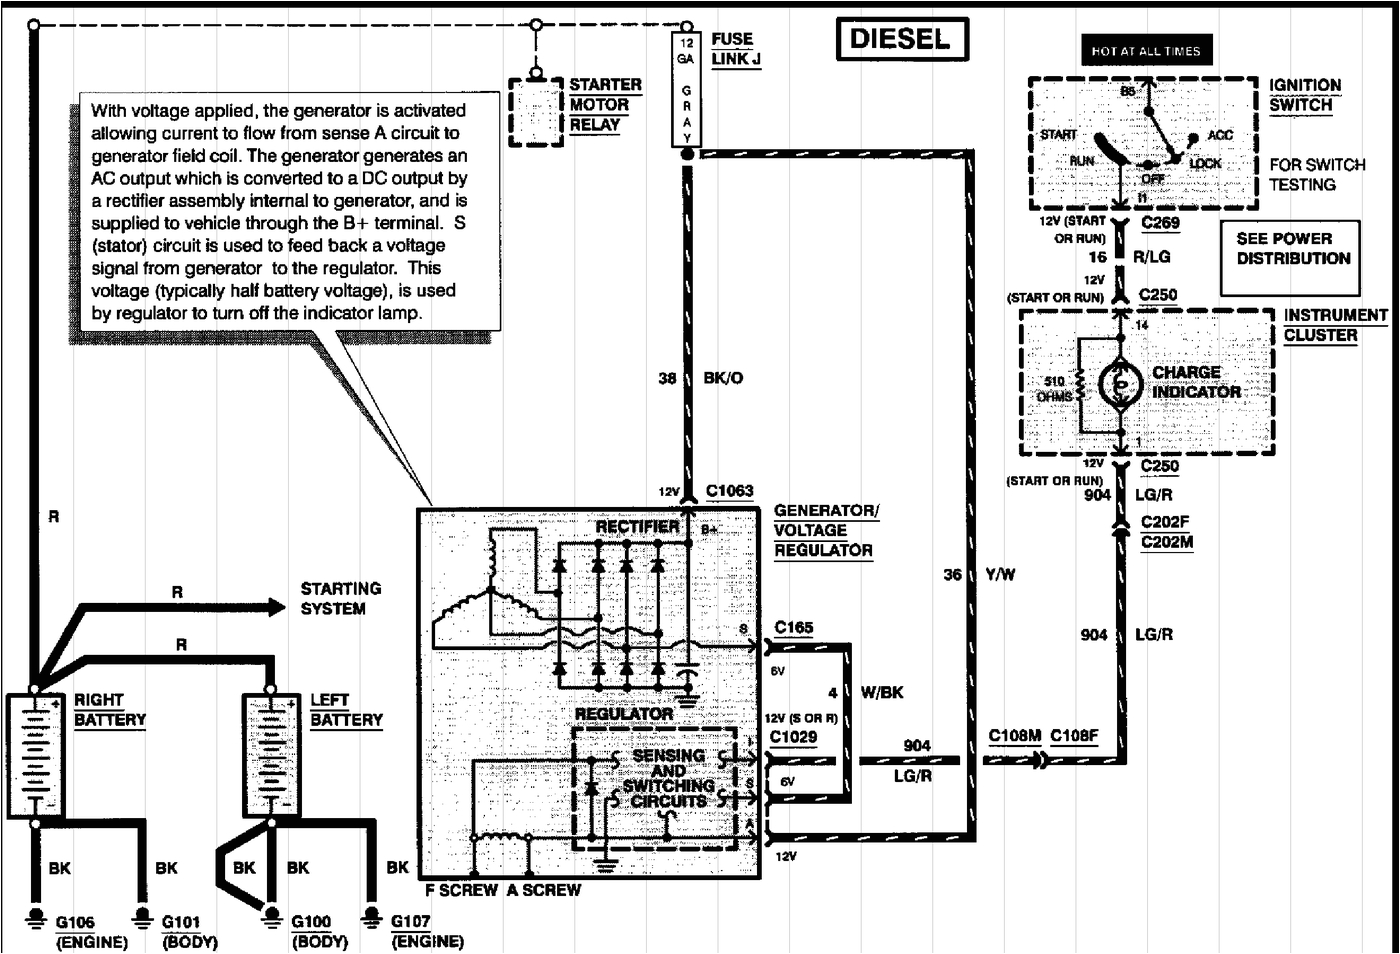 1997 F350 Wiring Diagram 1997 ford F 250 Wiring Diagram Wiring Diagram Name